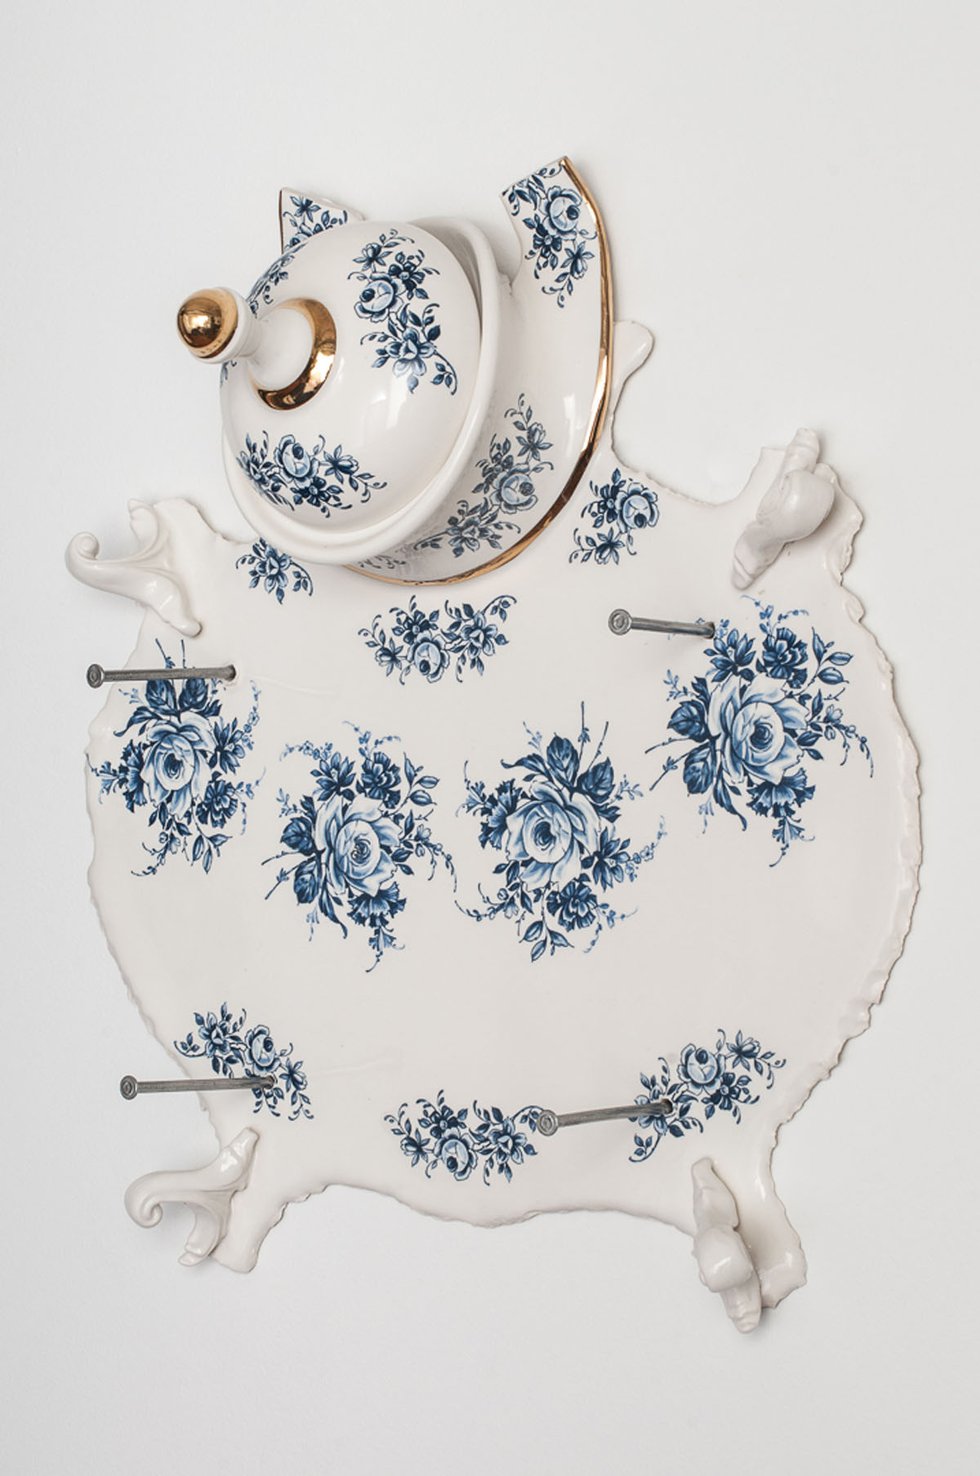 Laurent Craste, "Dépouille aux fleurs ‘Bleu de Delft'," 2012/2015